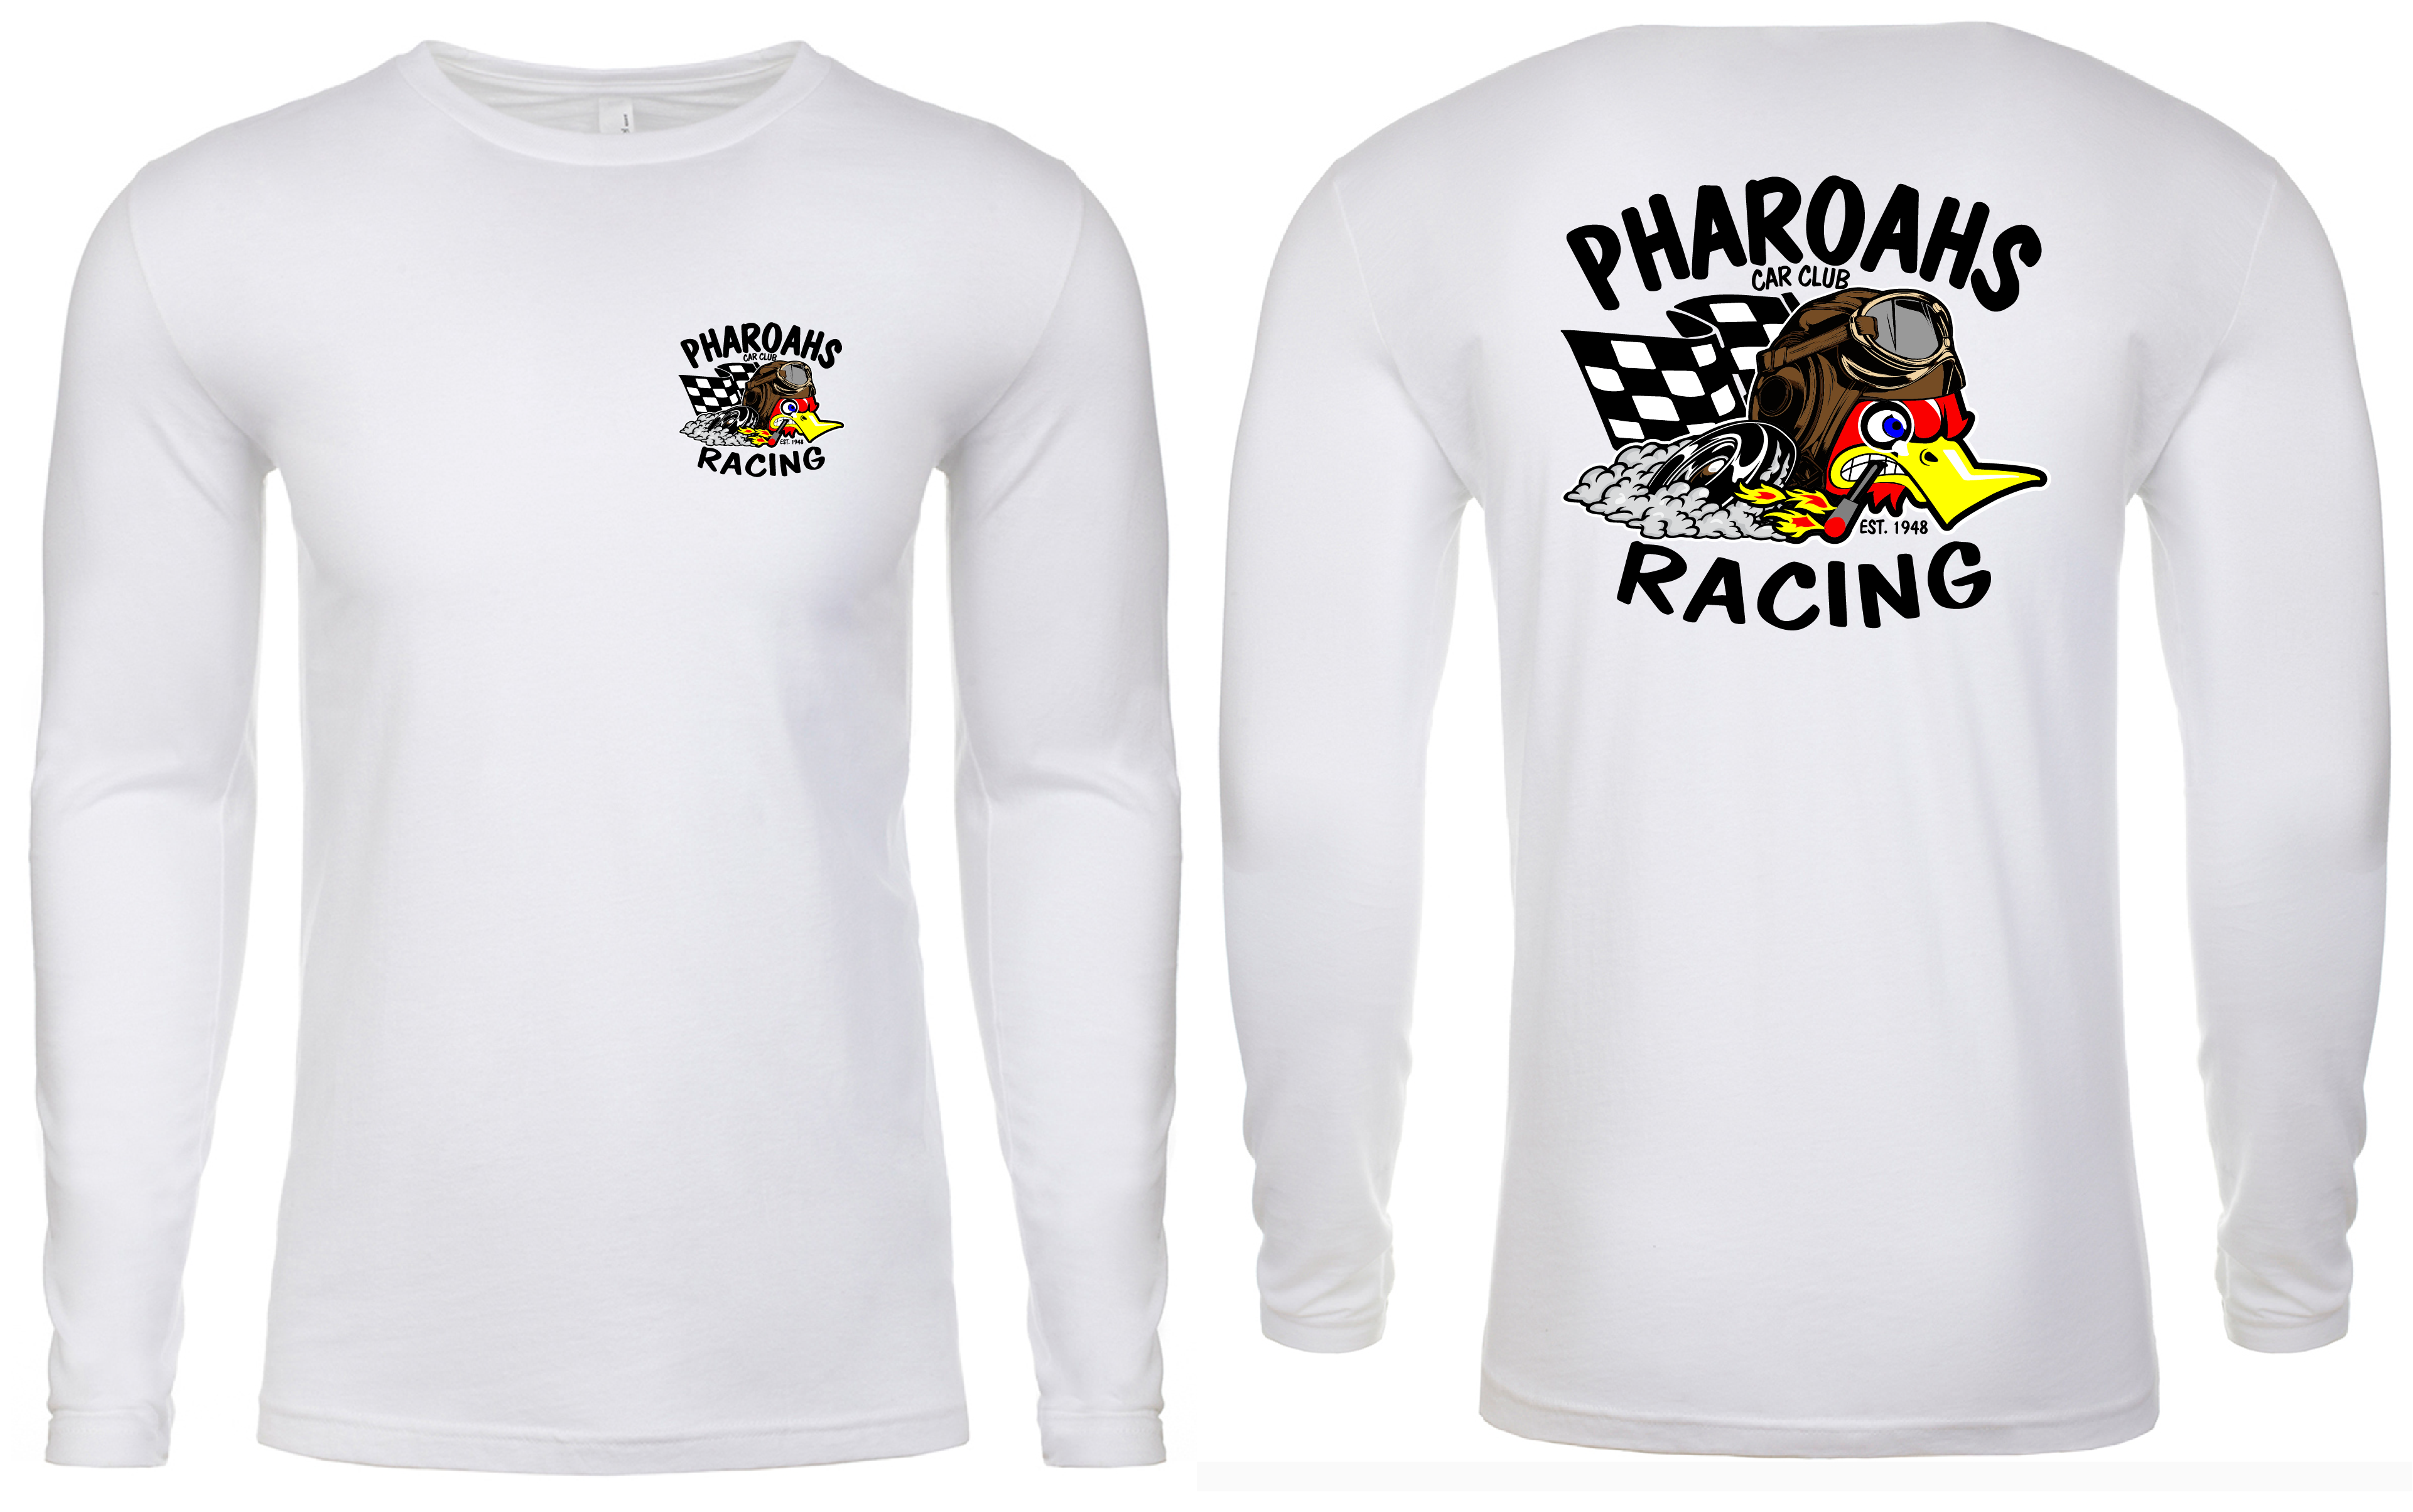 Pharoahs Racing Tee (White)